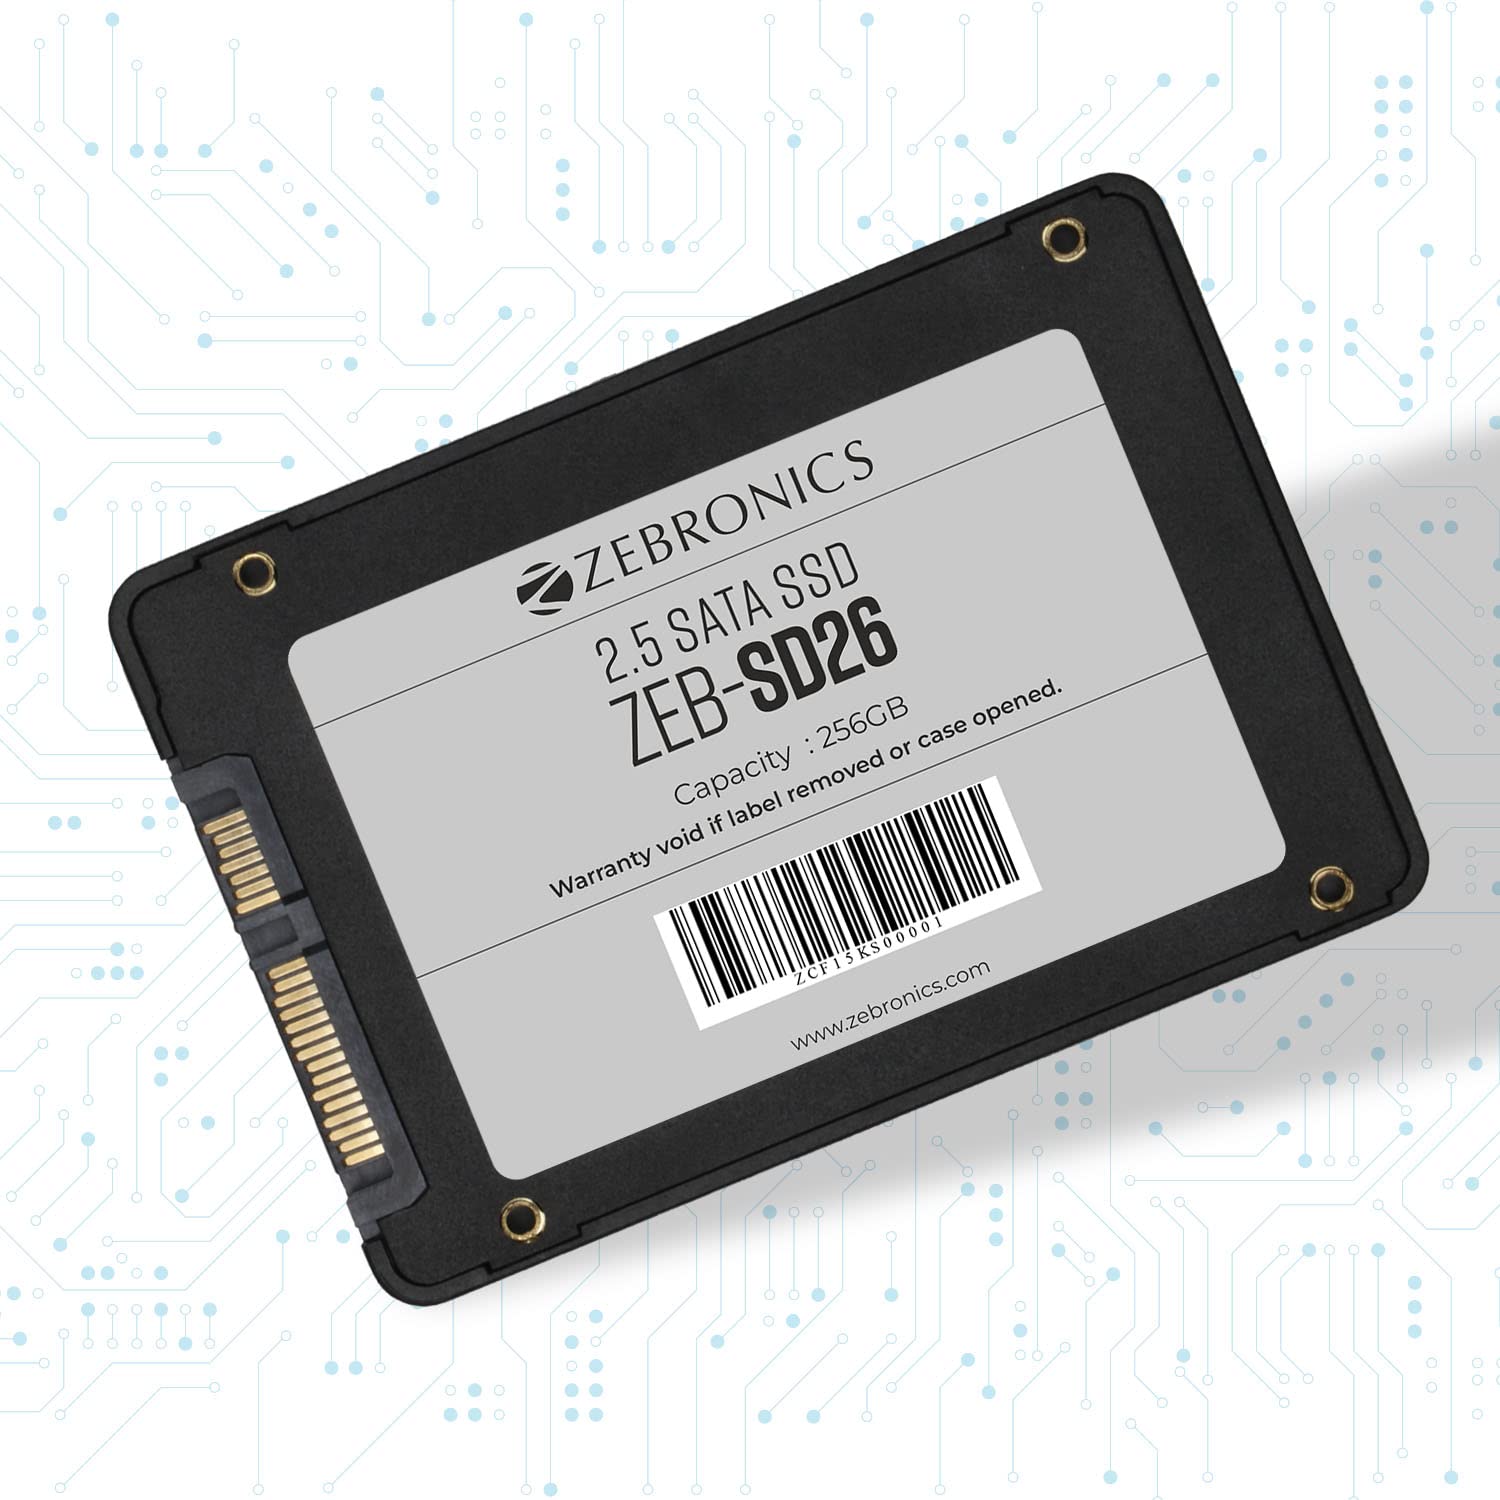 ZEBRONICS Zeb-SD26 256GB SSD,  Solid State Drive, TLC, SATA II & SATA III Interface